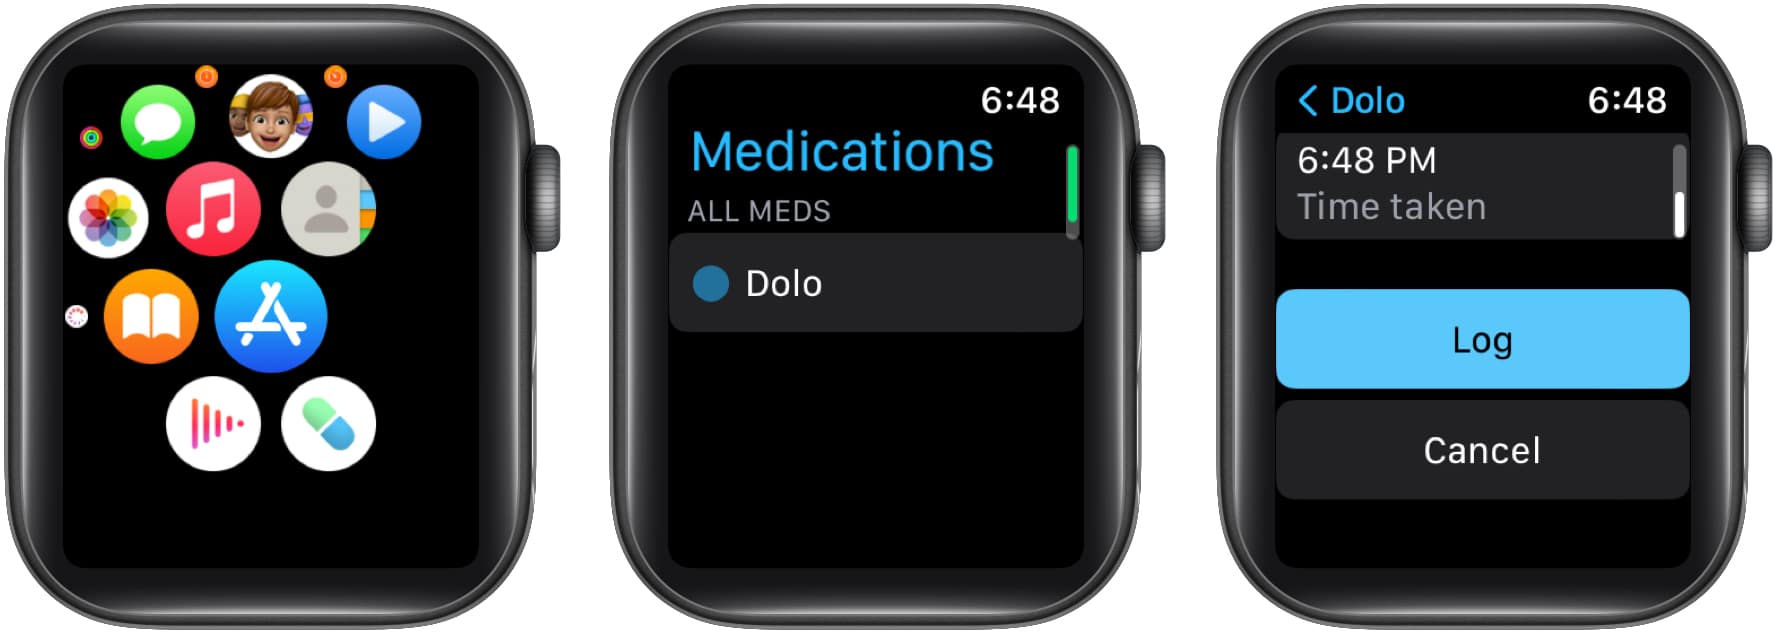 Enregistrer les médicaments dans Apple Watch